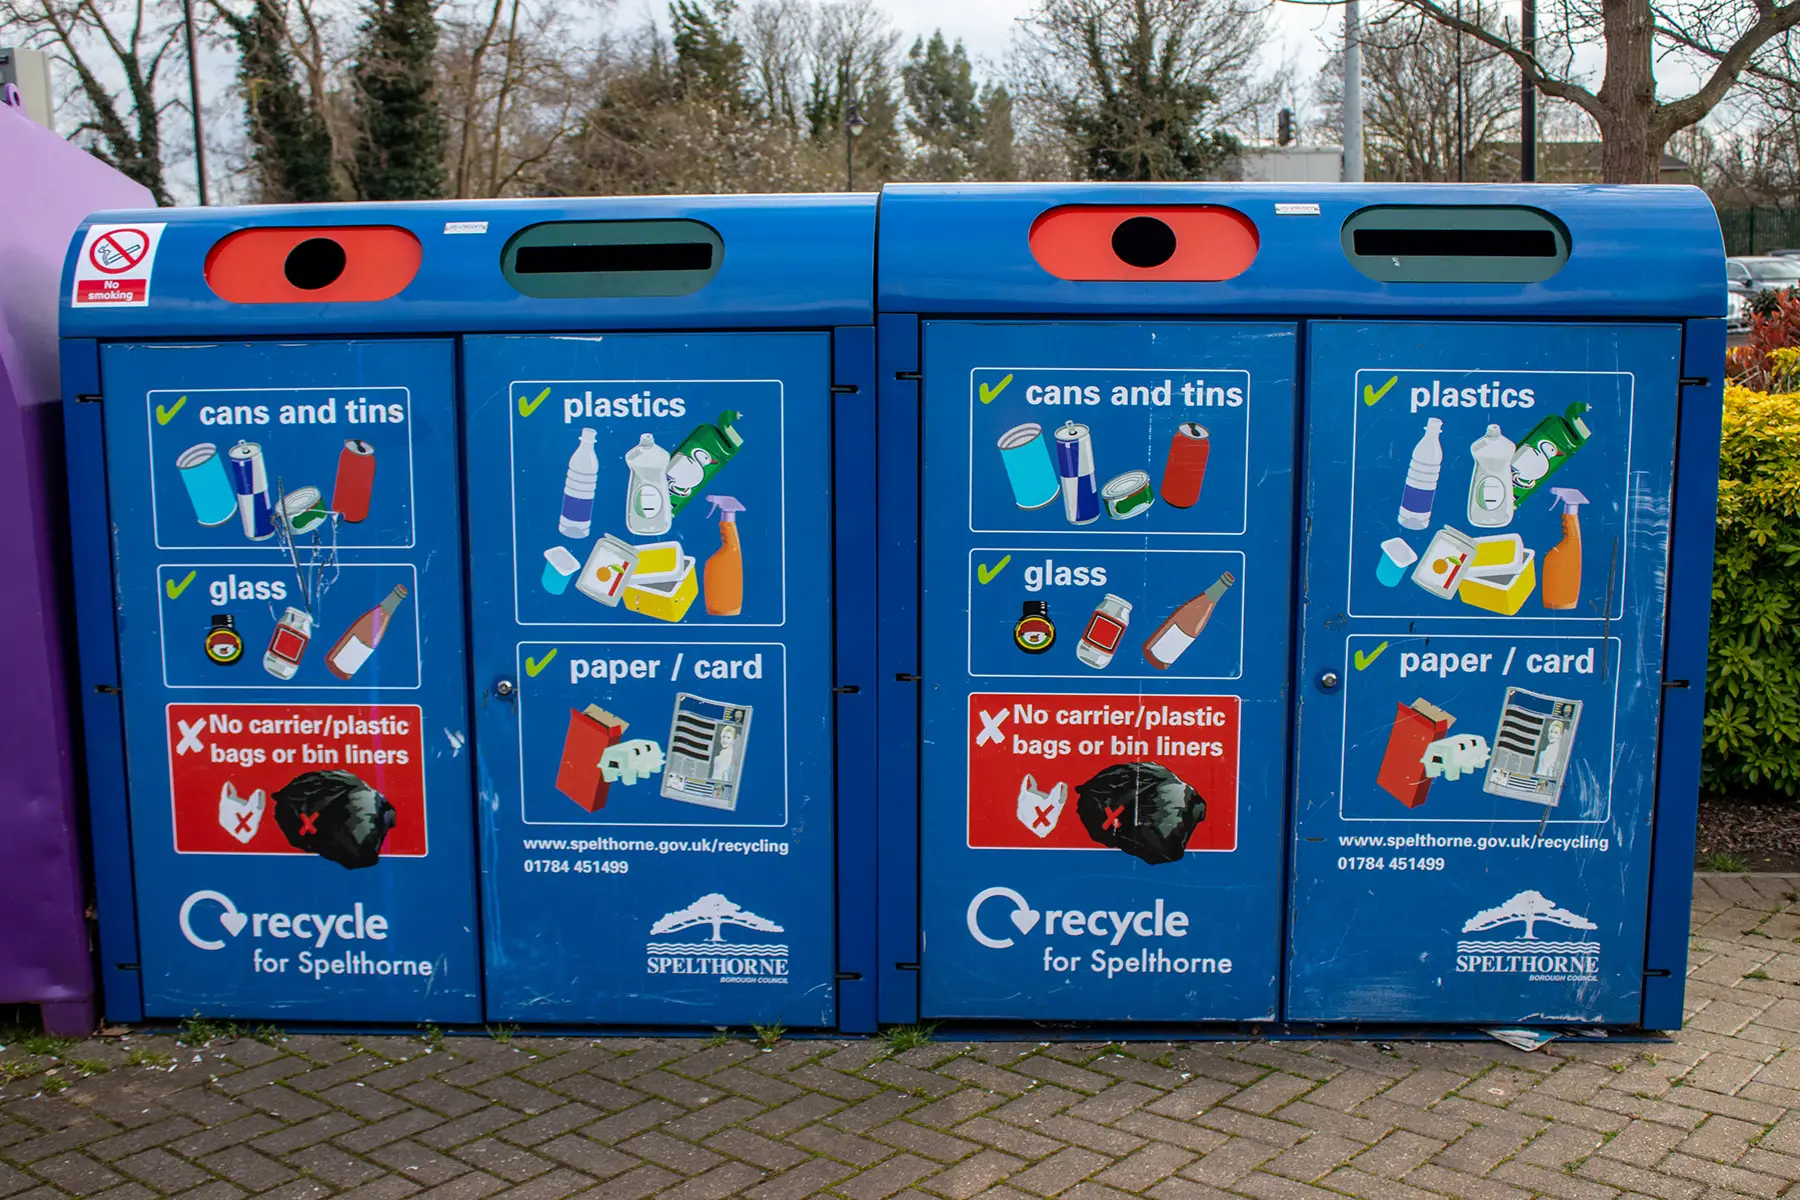 Recycling bins in Spelthorne, UK